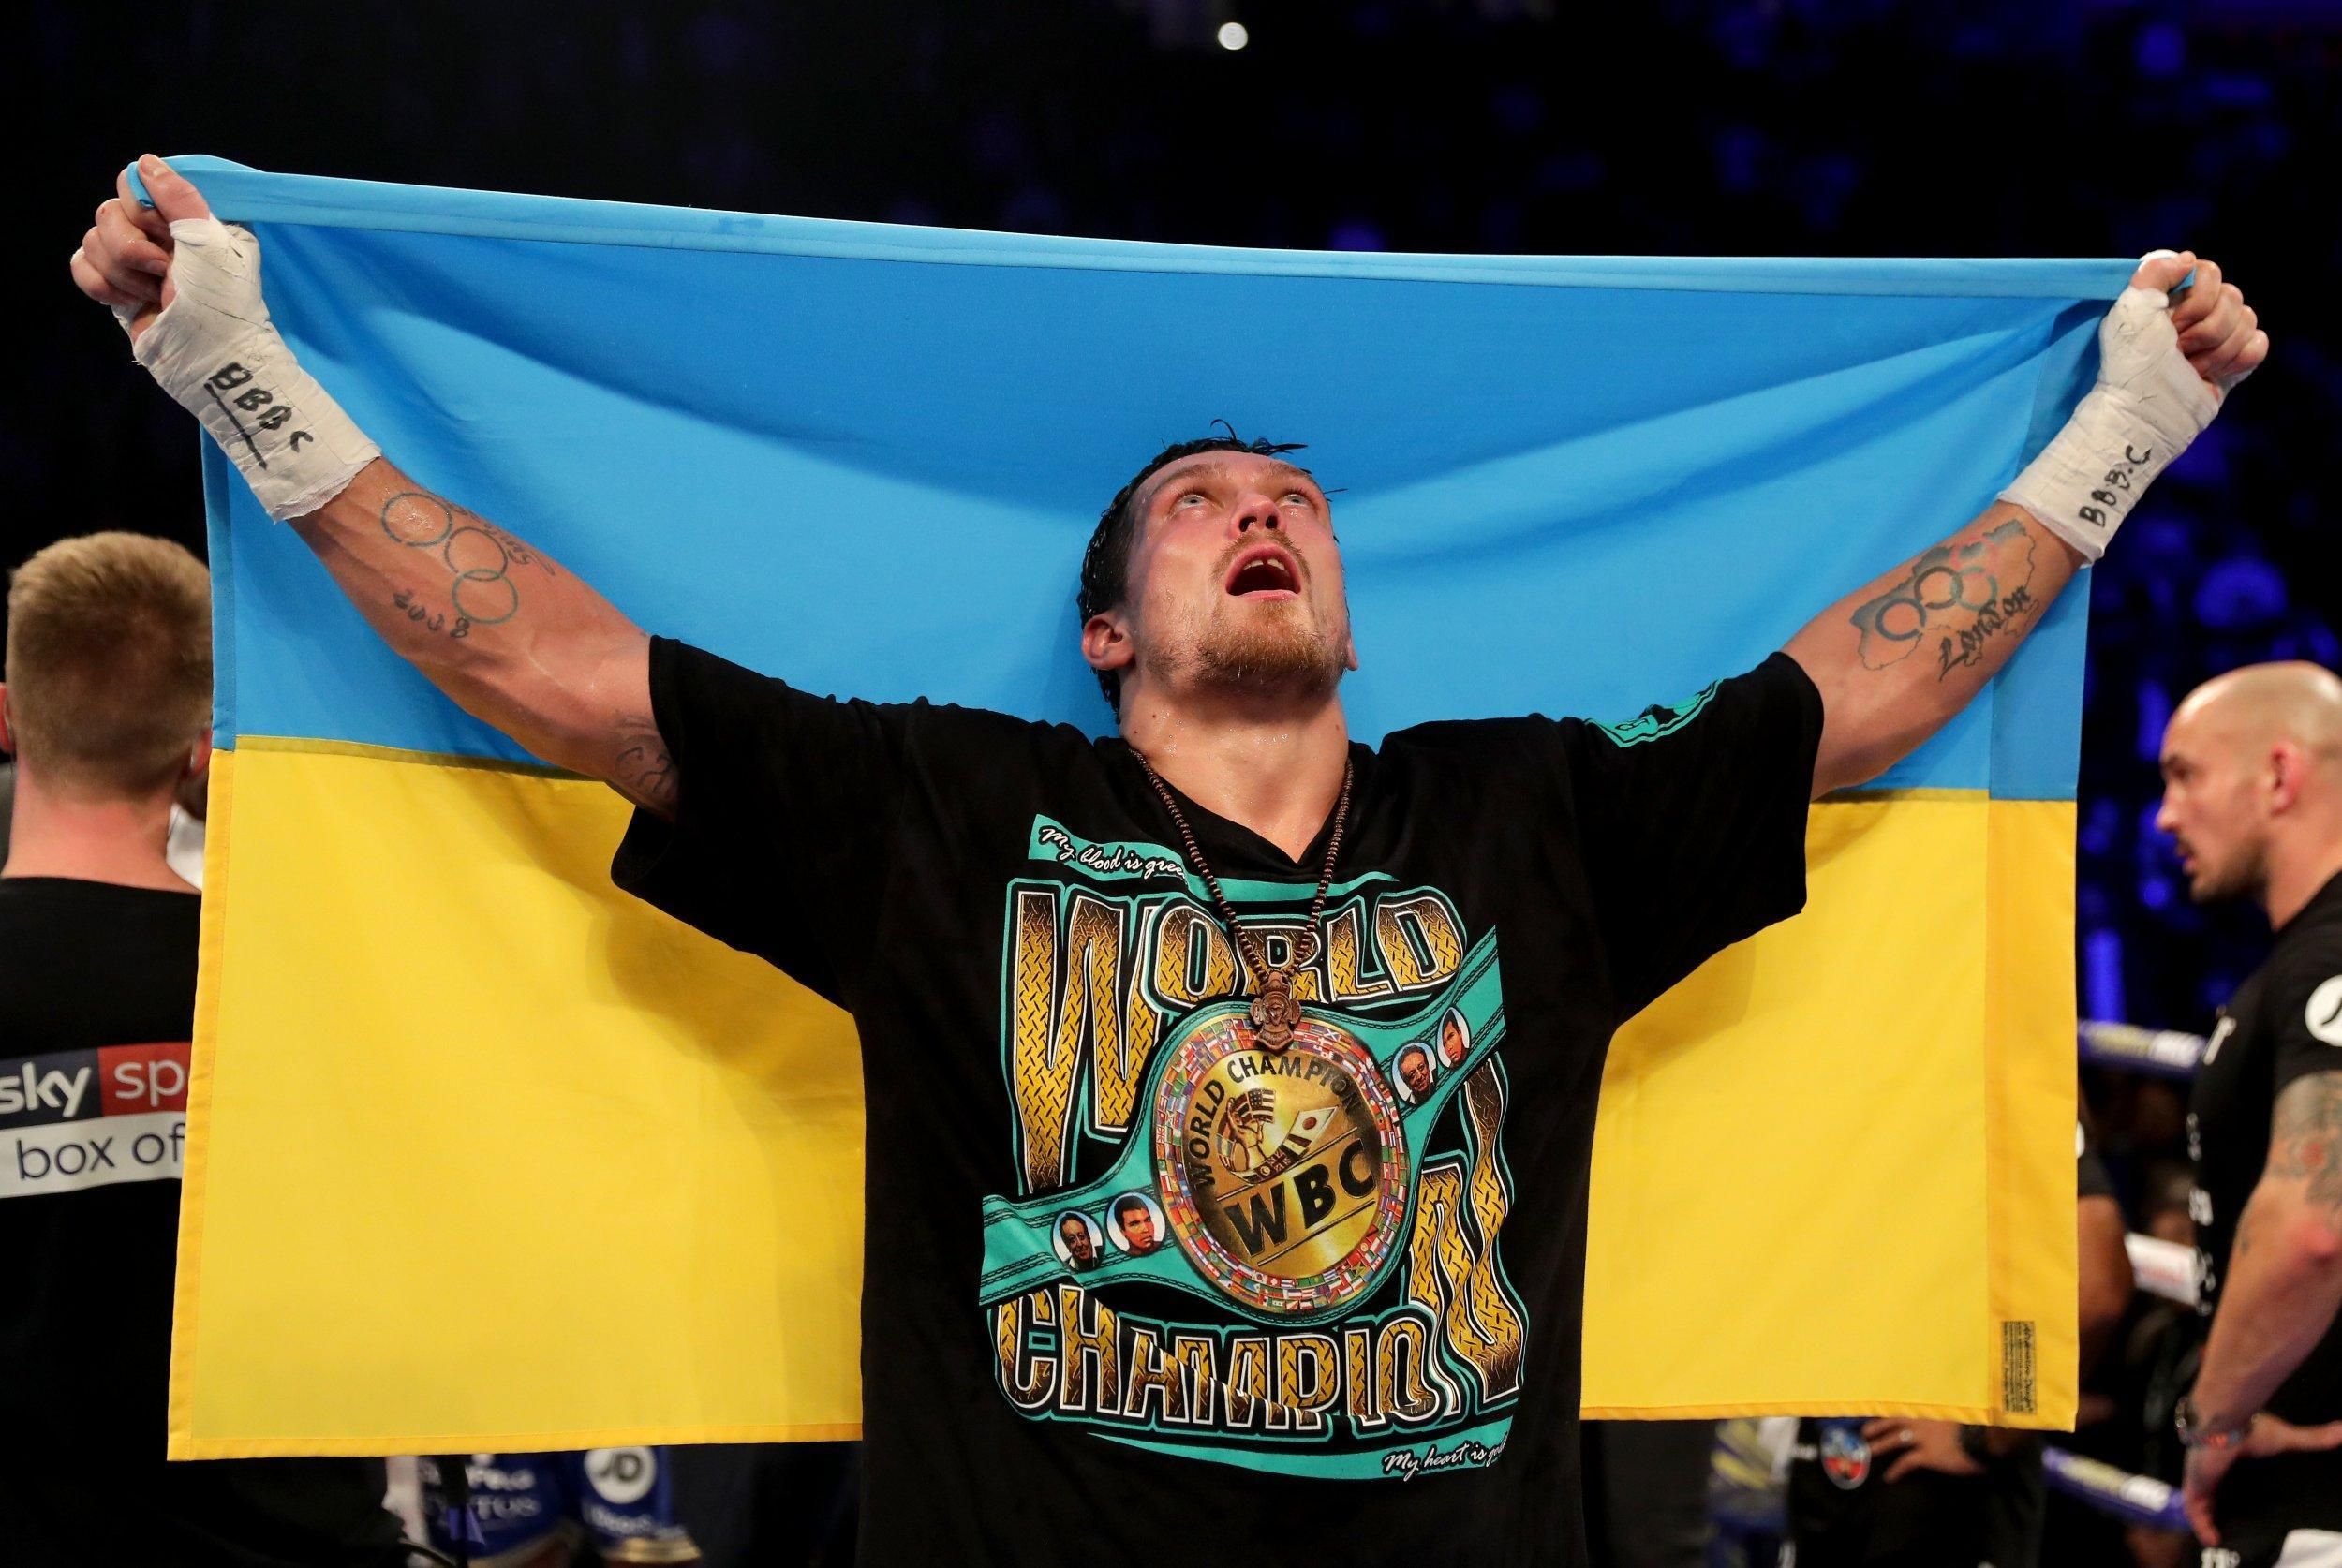 Україна не обговорюється, – менеджер Усика назвав можливе місце проведення реваншу з Джошуа - новини боксу - 24 канал Спорт